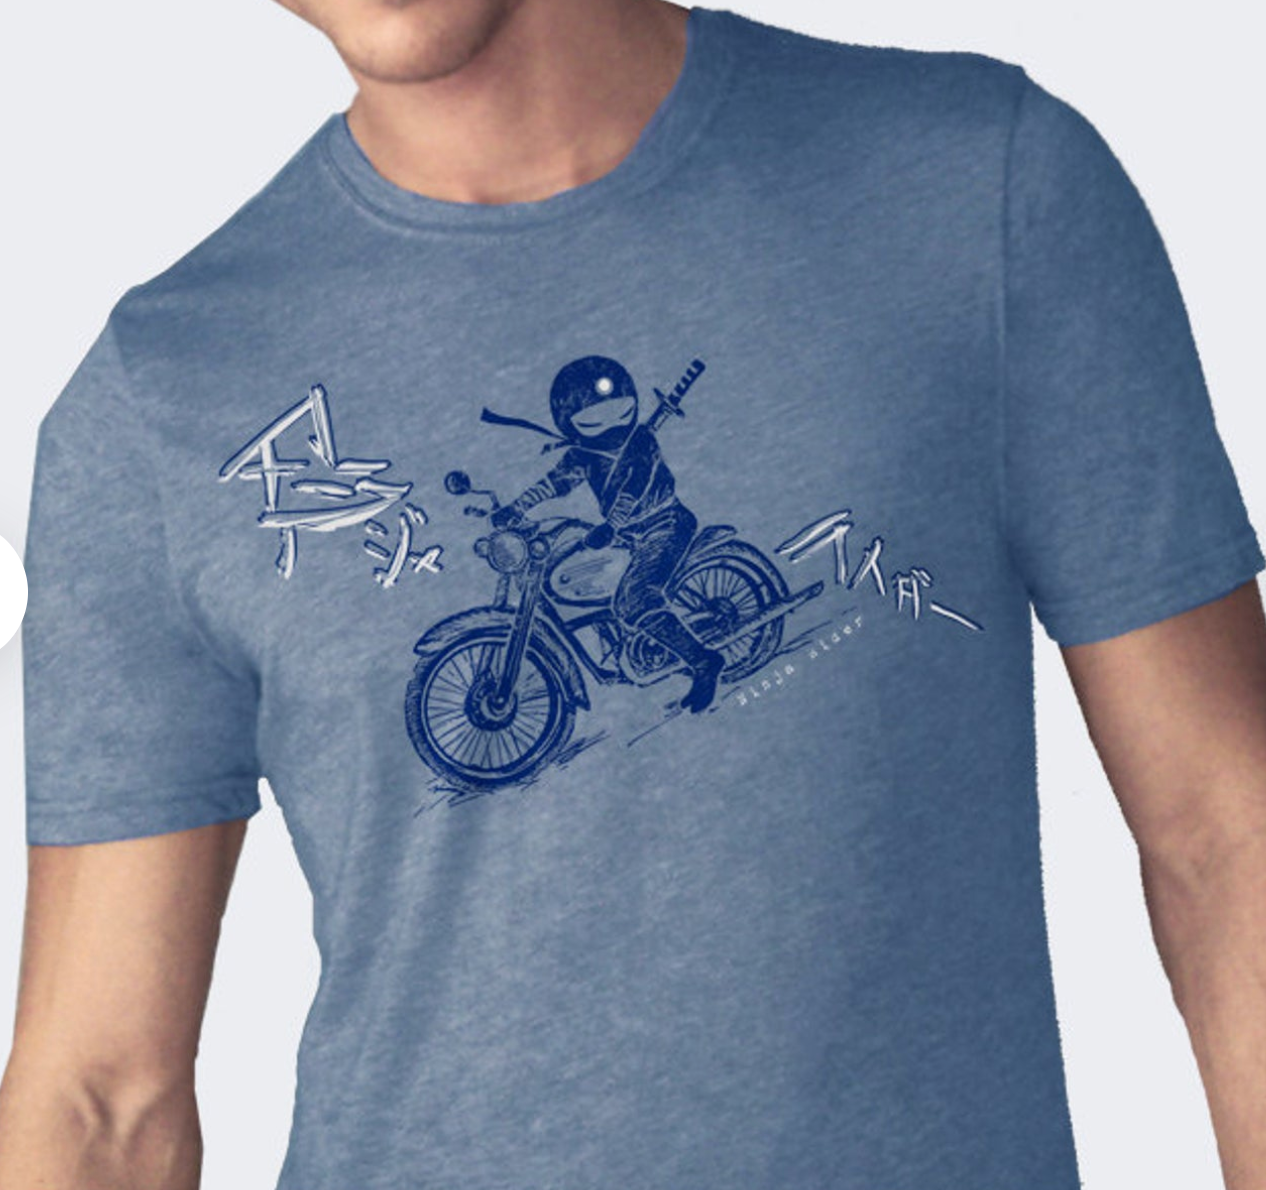 Shirt: Ninja Rider - Unisex Crew